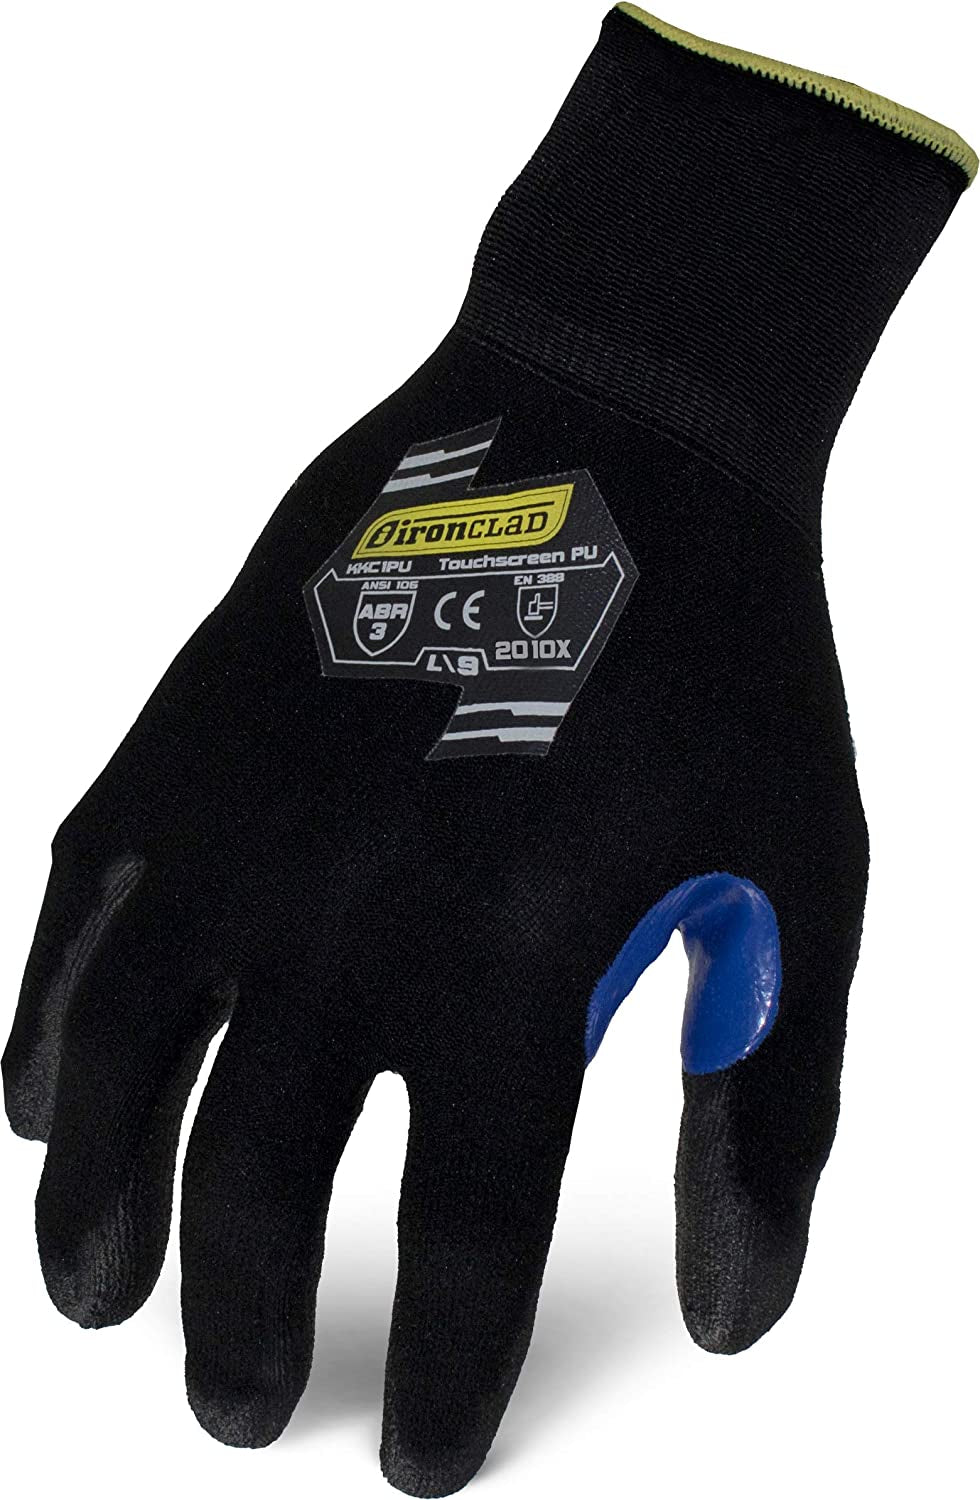 secretgreen.com.au, KKC1PU-04-L Knit A1 Polyurethane Touchscreen Cut Resistant Gloves, Large, Black